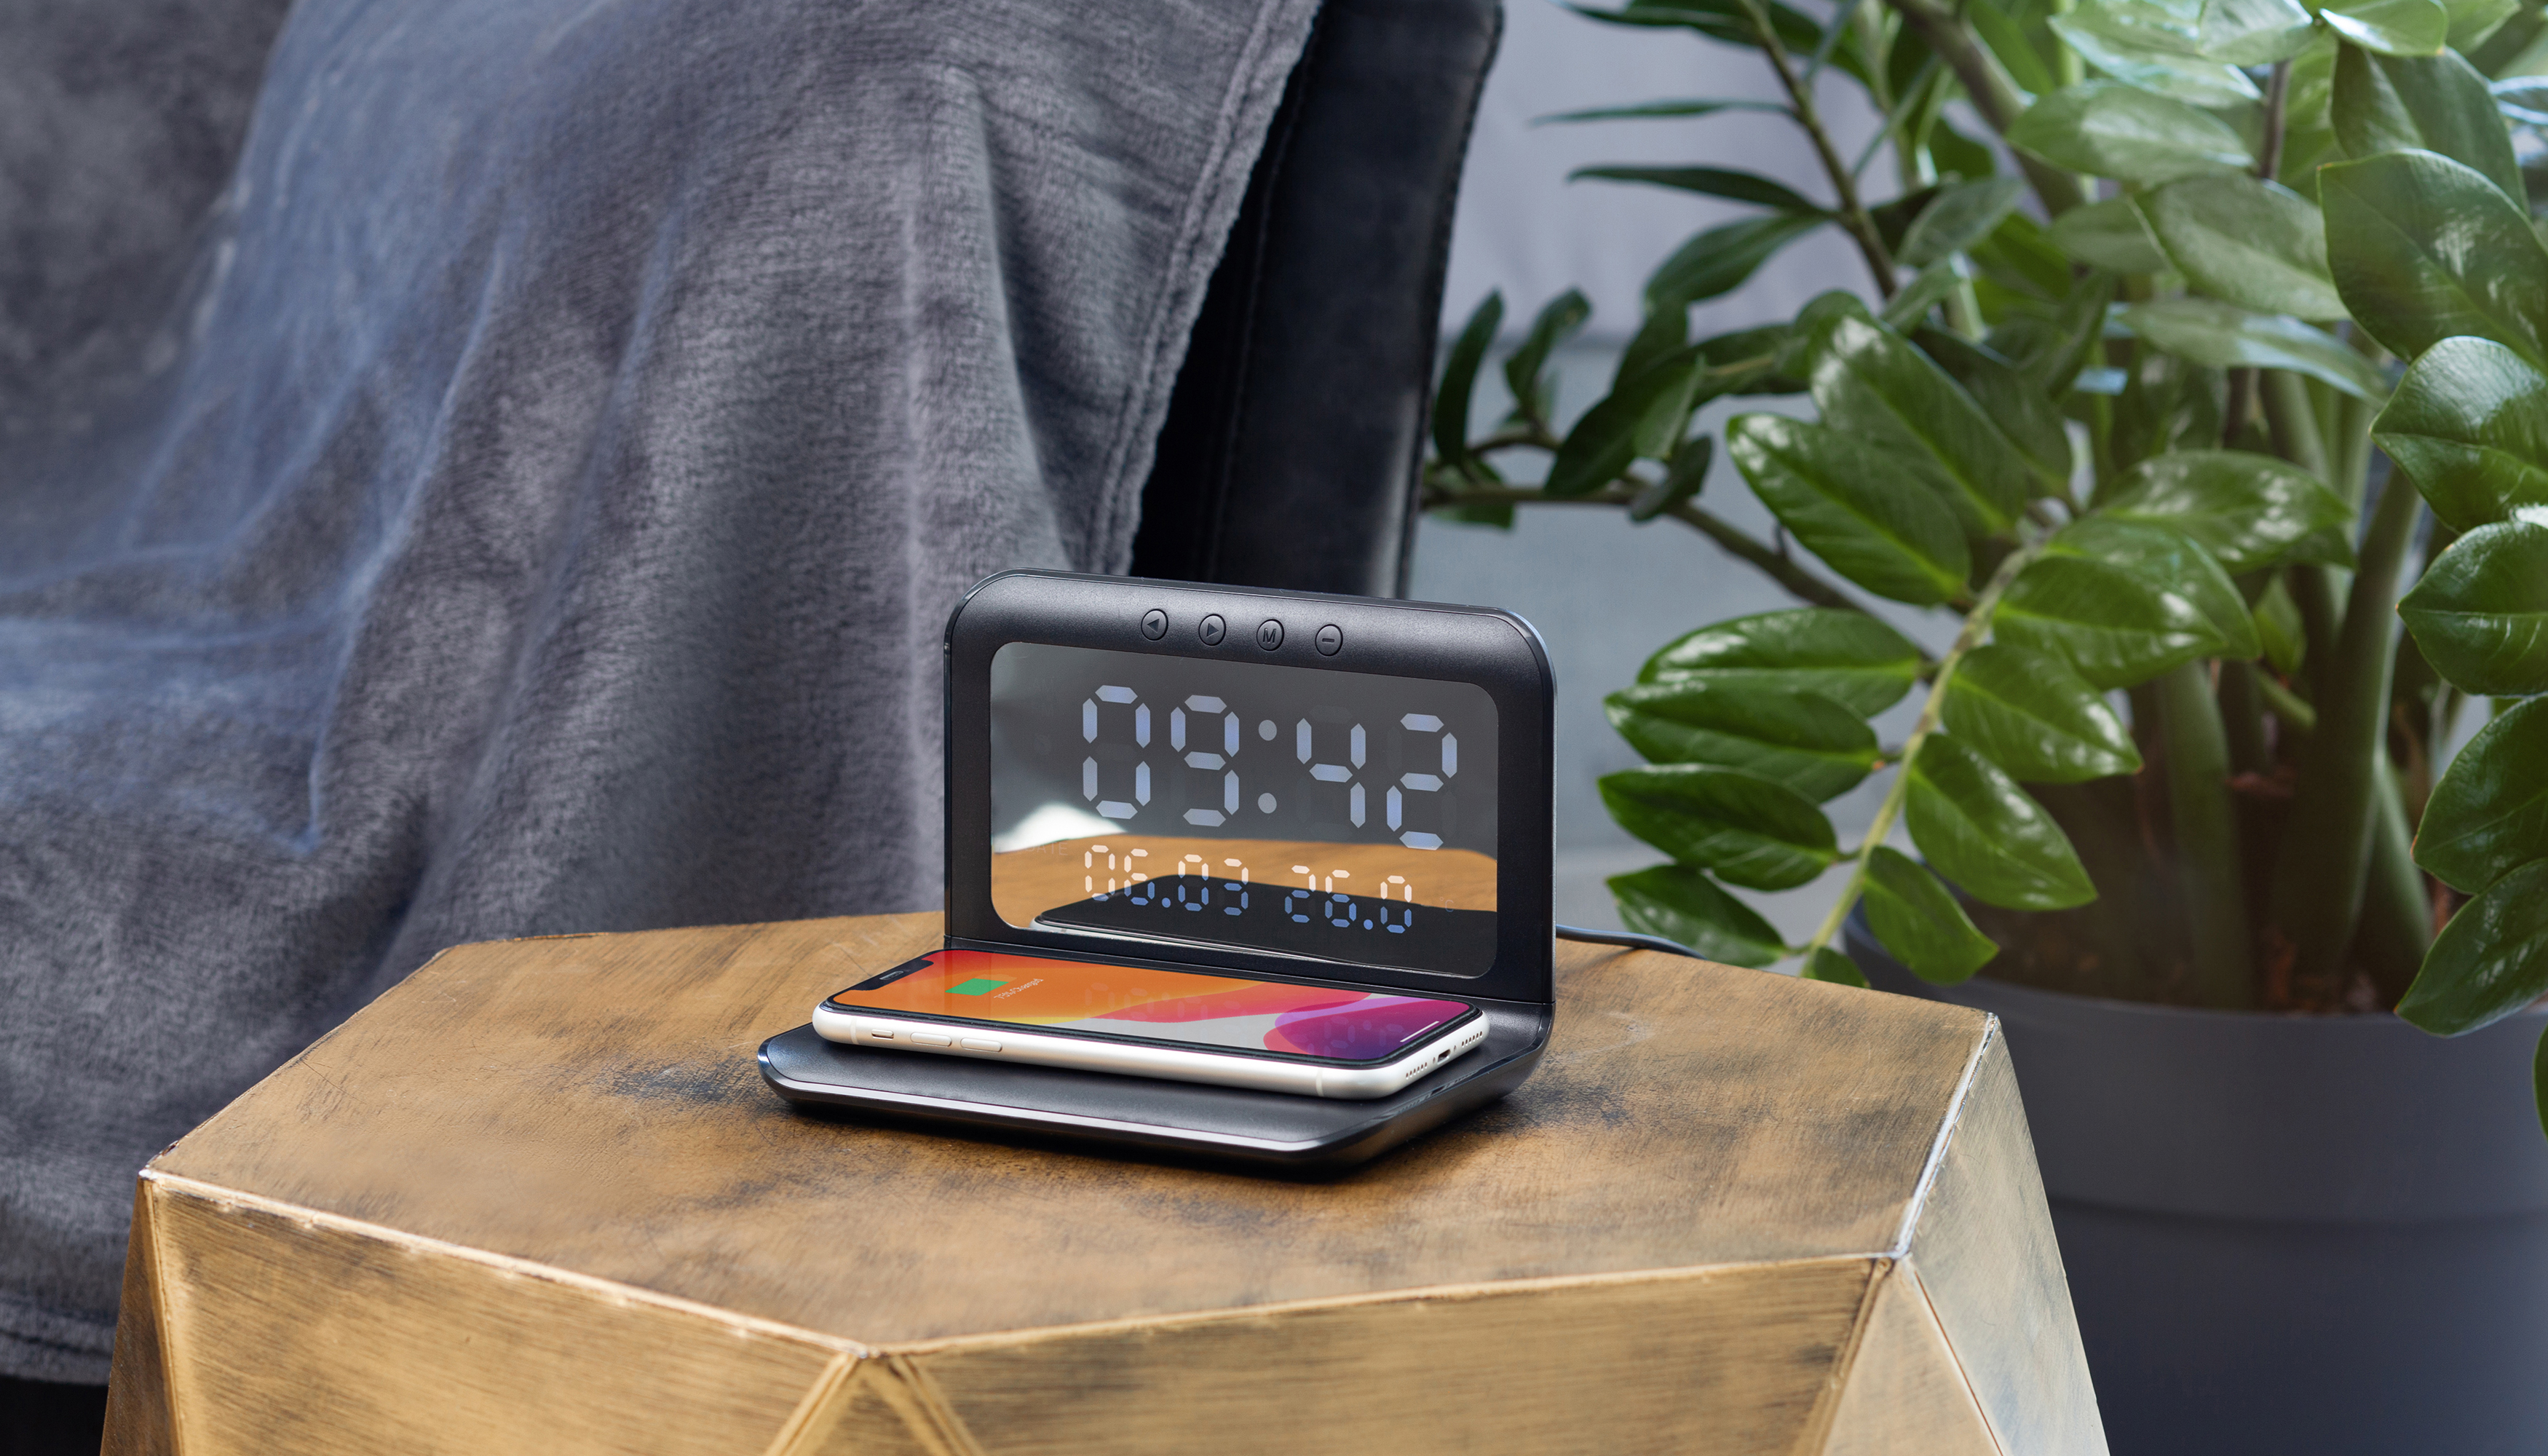 Настольные часы "Smart Time" с беспроводным (15W) зарядным устройством, будильником и термометром, со съёмным дисплеем